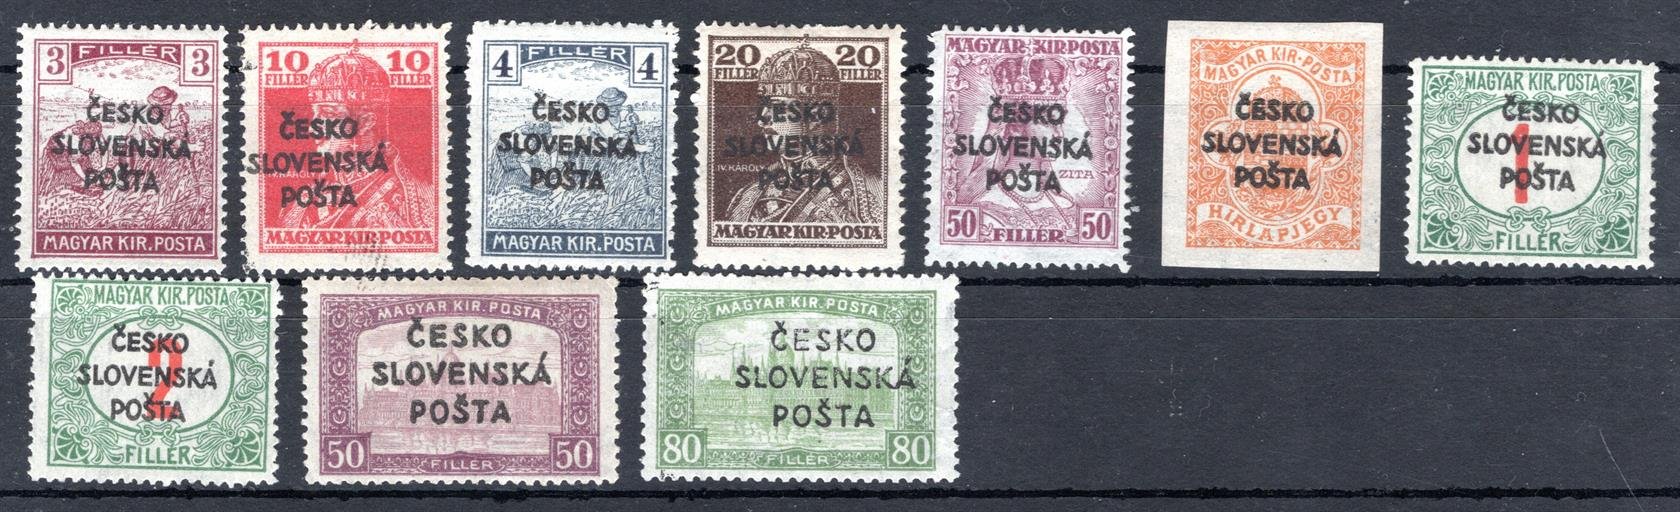 RV , Šrobárův přetisk, sestava maďarských známek s přetiskem, zk. různí znalci